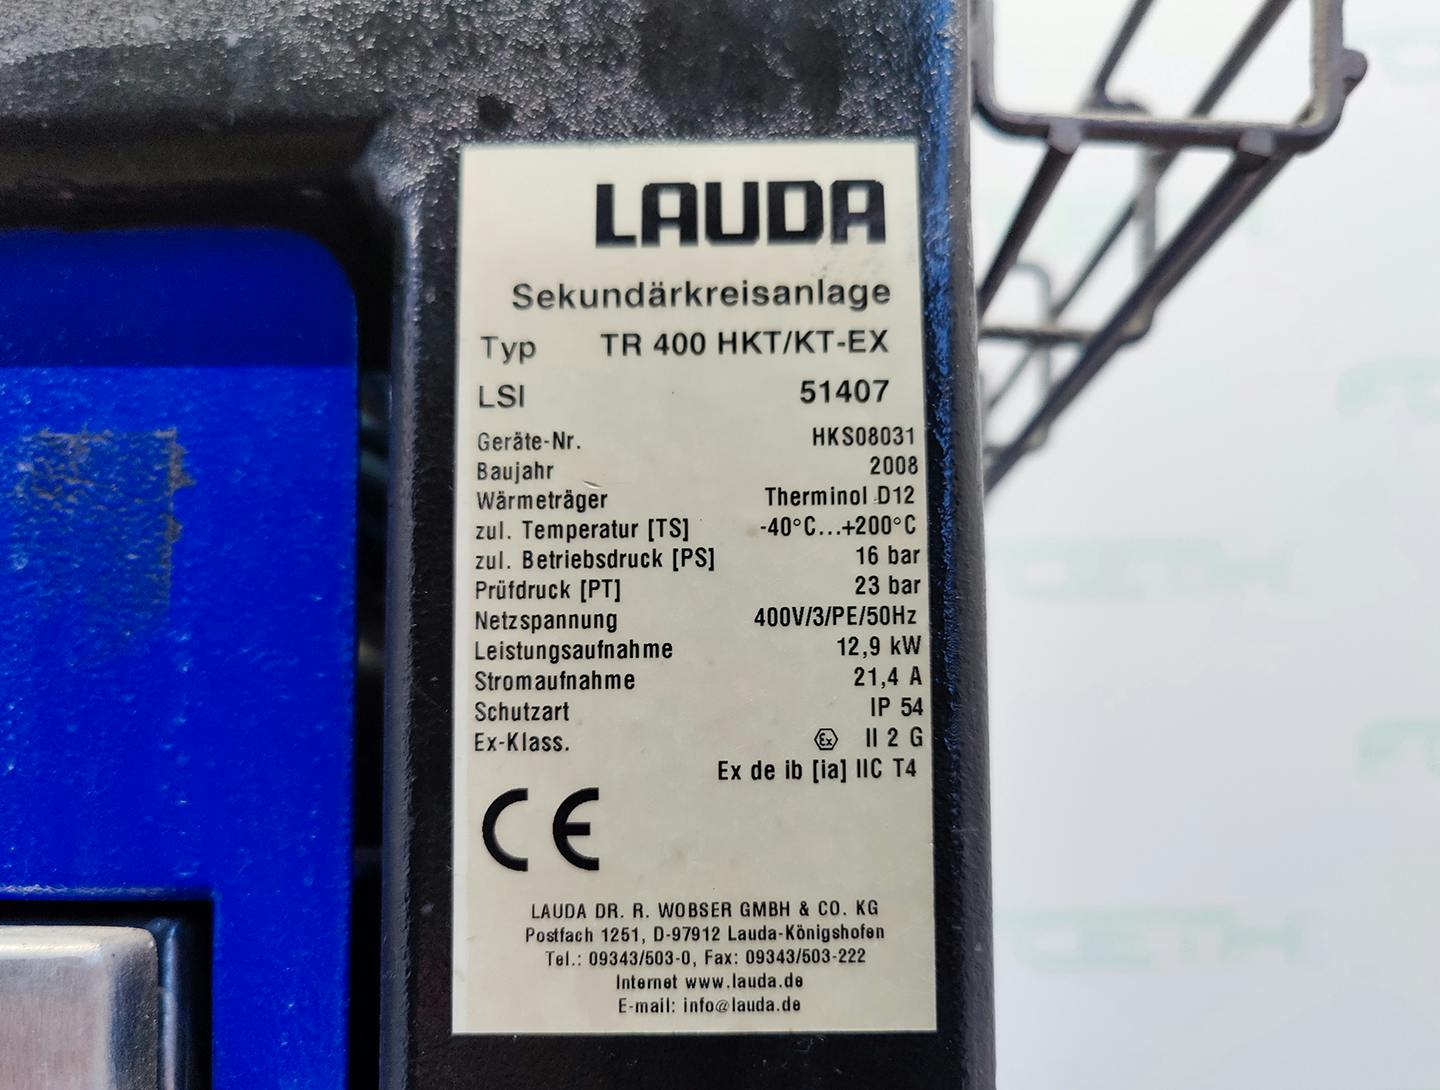 Lauda TR400 HKT/K-EX "secondary circuit system" - Temperature control unit - image 7